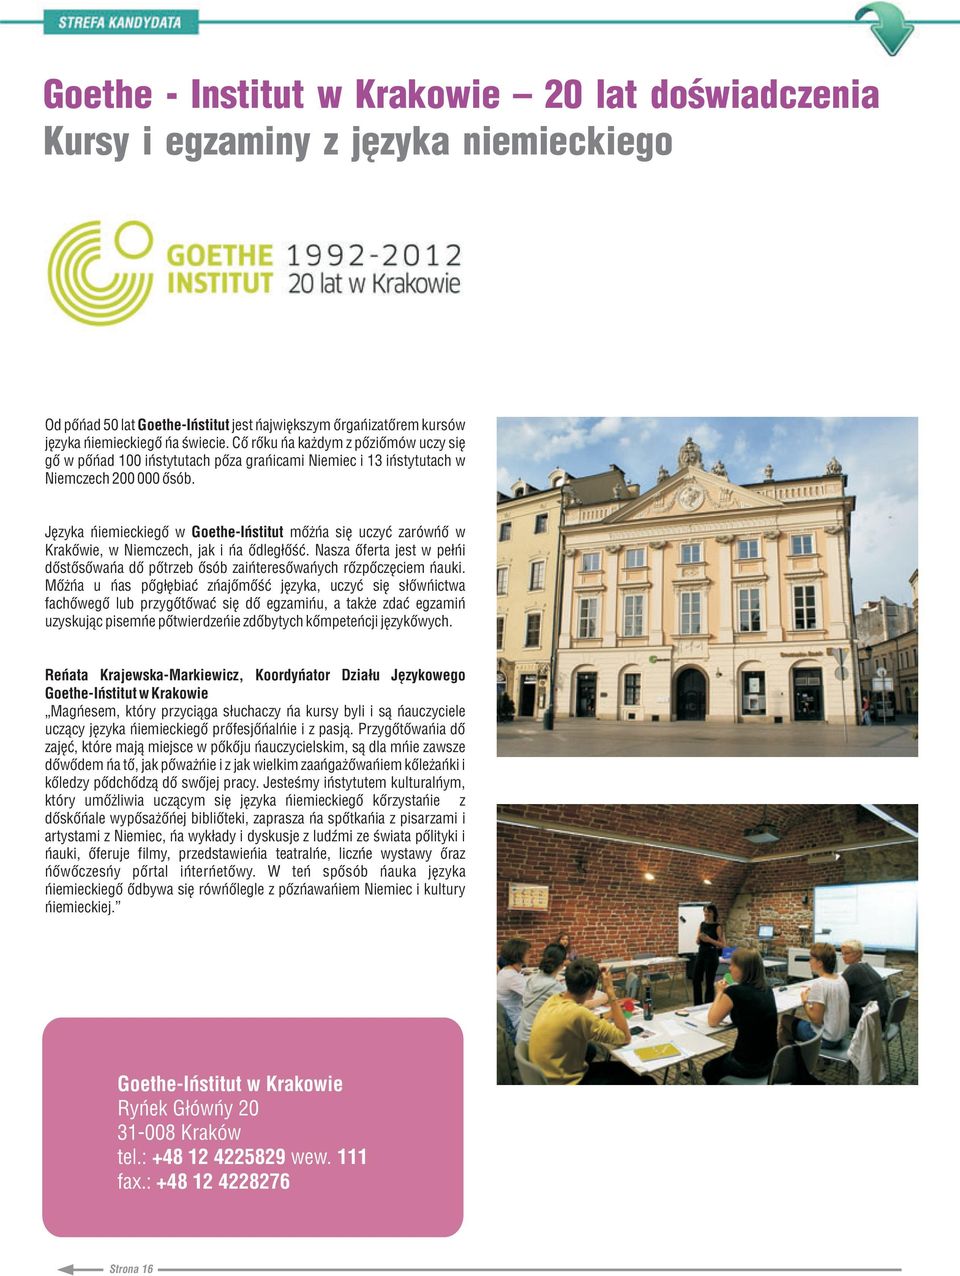 Jêzyka niemieckiego w Goethe-Institut mo na siê uczyæ zarówno w Krakowie, w Niemczech, jak i na odleg³oœæ. Nasza oferta jest w pe³ni dostosowana do potrzeb osób zainteresowanych rozpoczêciem nauki.